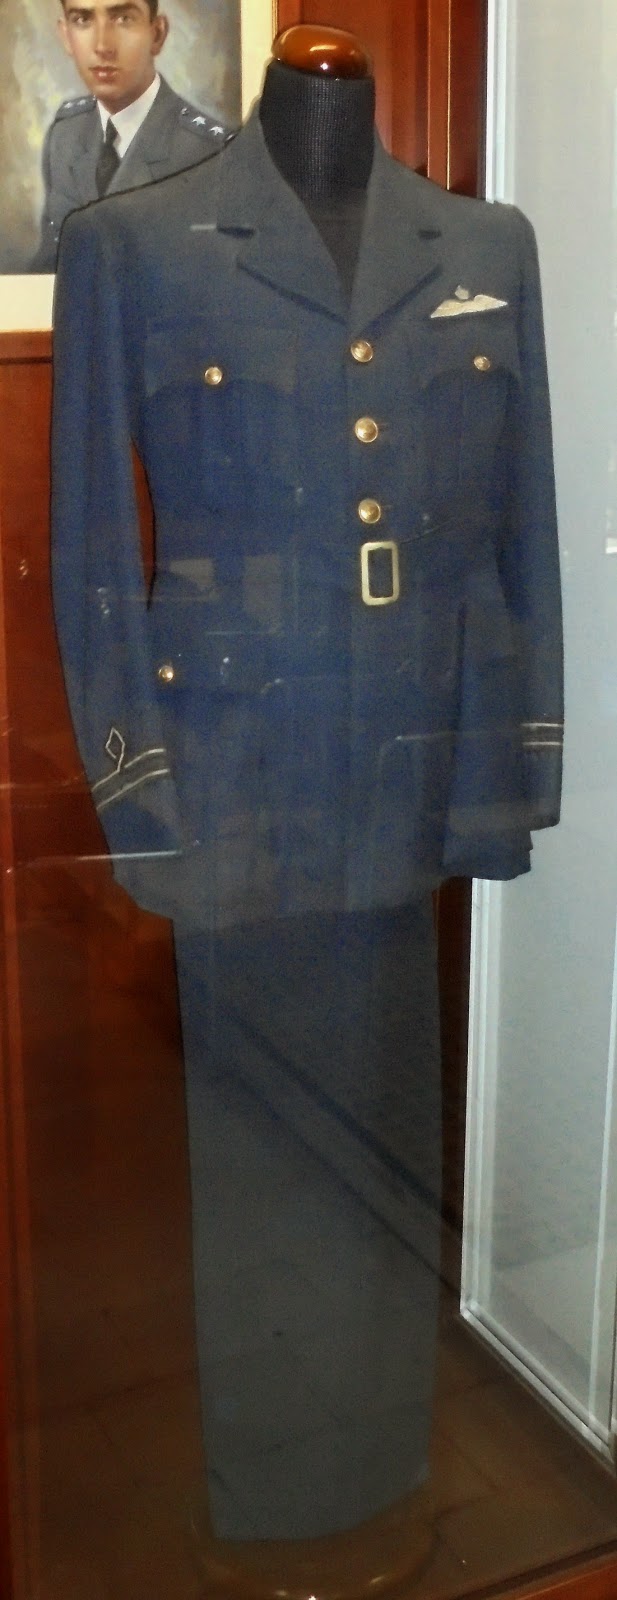 το Πολεμικό Μουσείο Καλπακίου